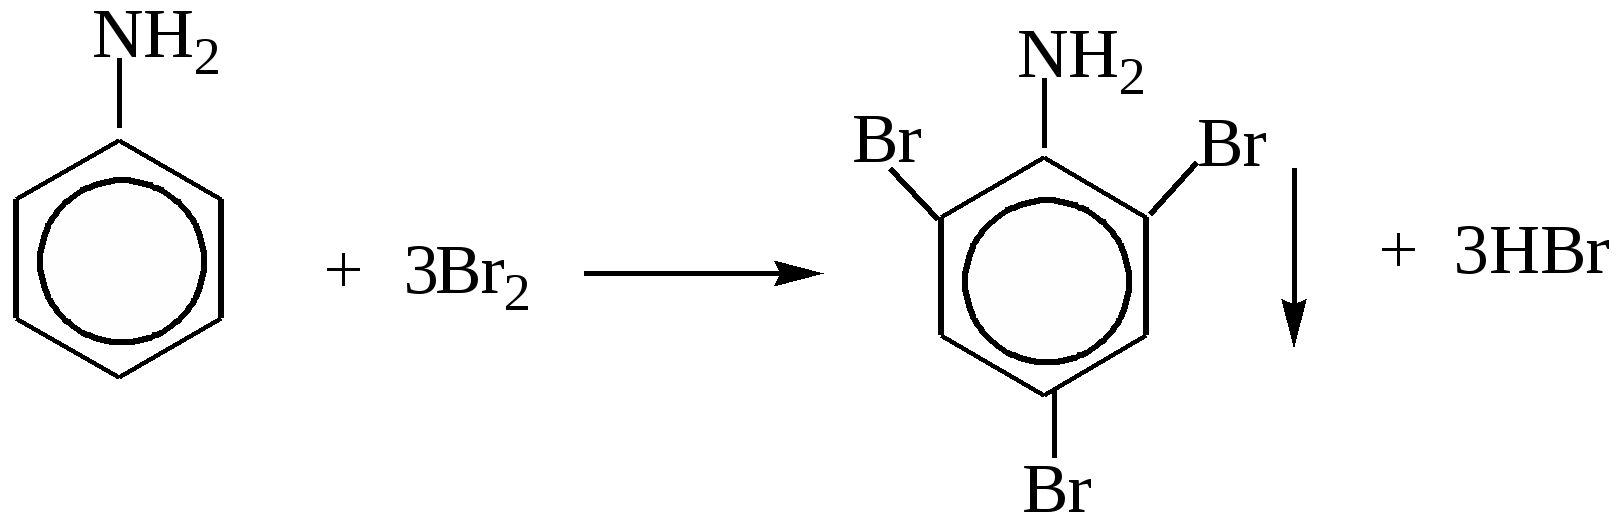 Анилин caocl2. Анилин плюс хлорная известь. Анилин и хлорная известь качественная реакция. Анилин с хлорной известью реакция. Анилин взаимодействует с гидроксидом калия